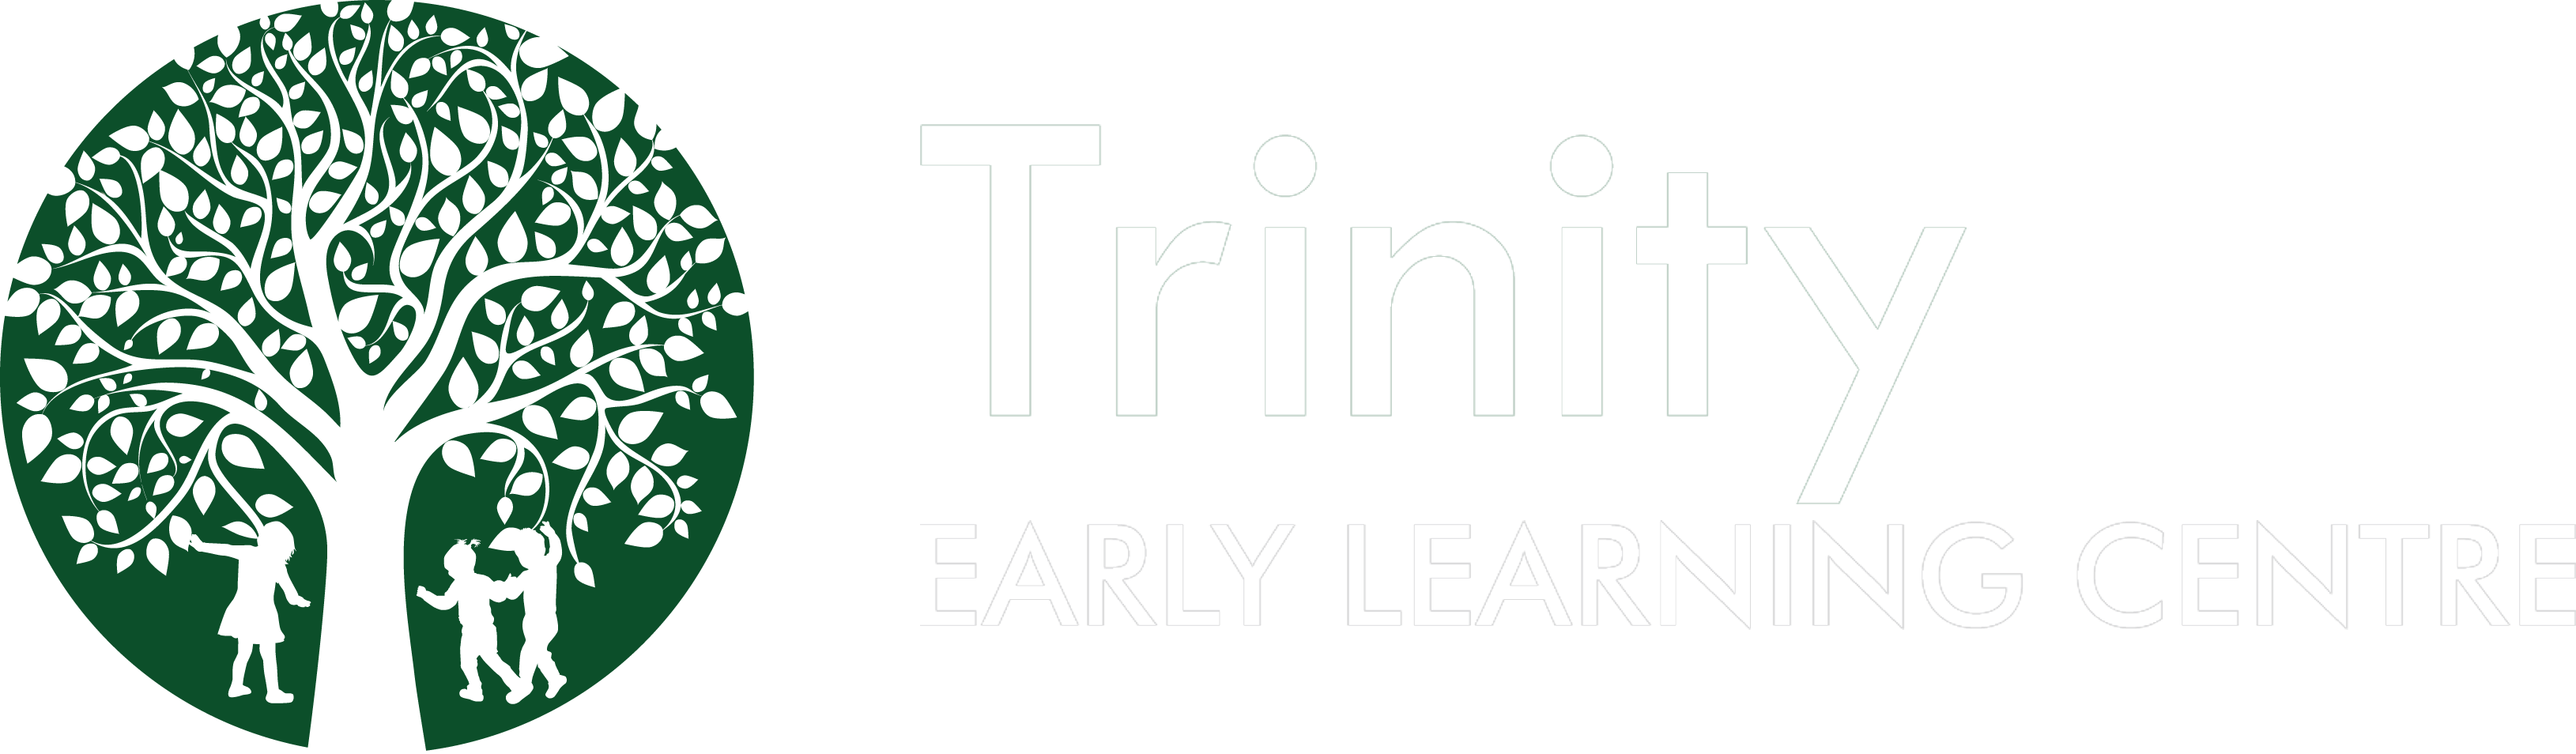 Trinity Early Learning Centre Logo